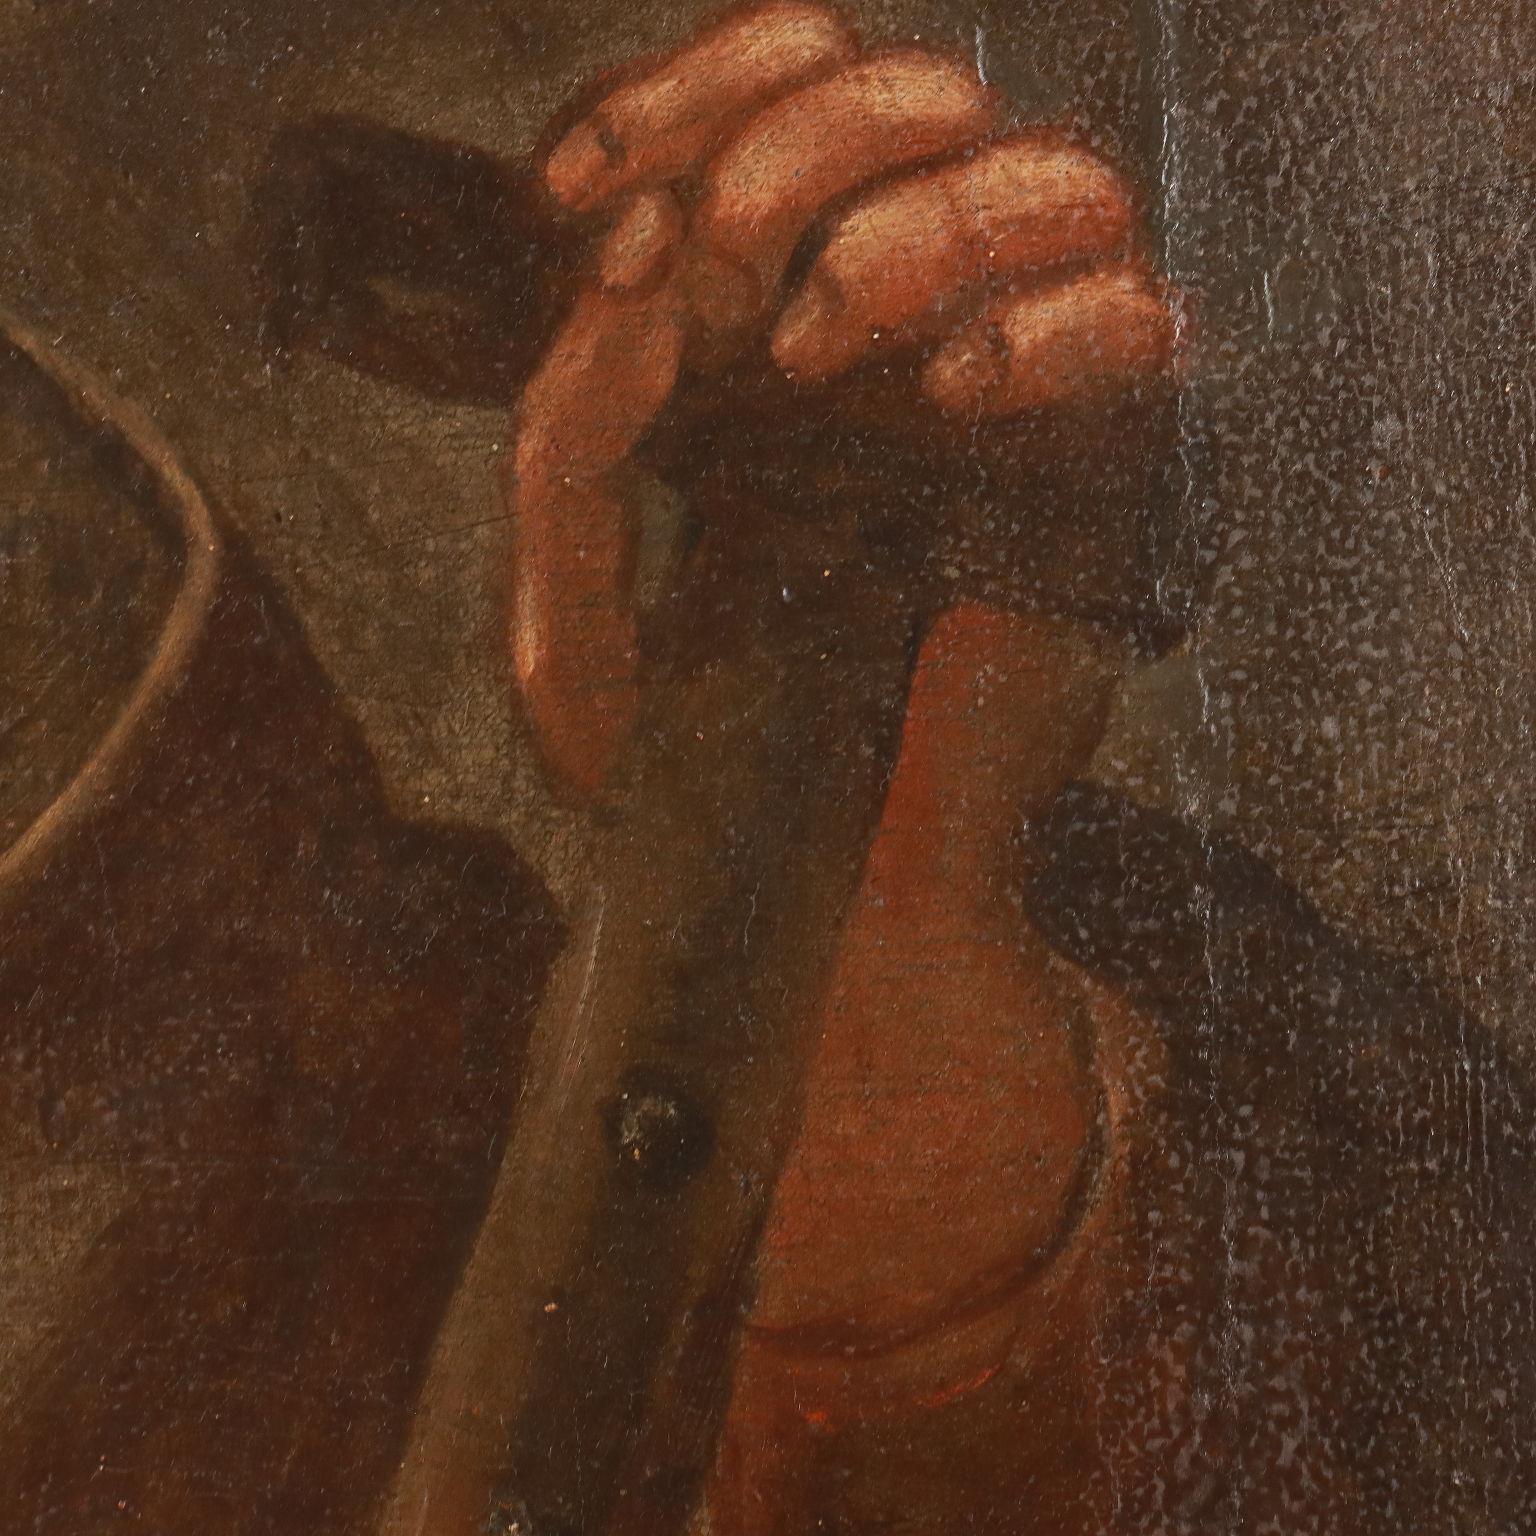 Öl auf Leinwand. Das Gemälde trägt oben den Namen des Künstlers (Giovani Piana) und das Datum der Ausführung 1616.
Sie stellt den Heiligen Simon dar,  er hält ein Buch und eine Säge in der Hand, sein ikonografisches Attribut, das auf das Martyrium